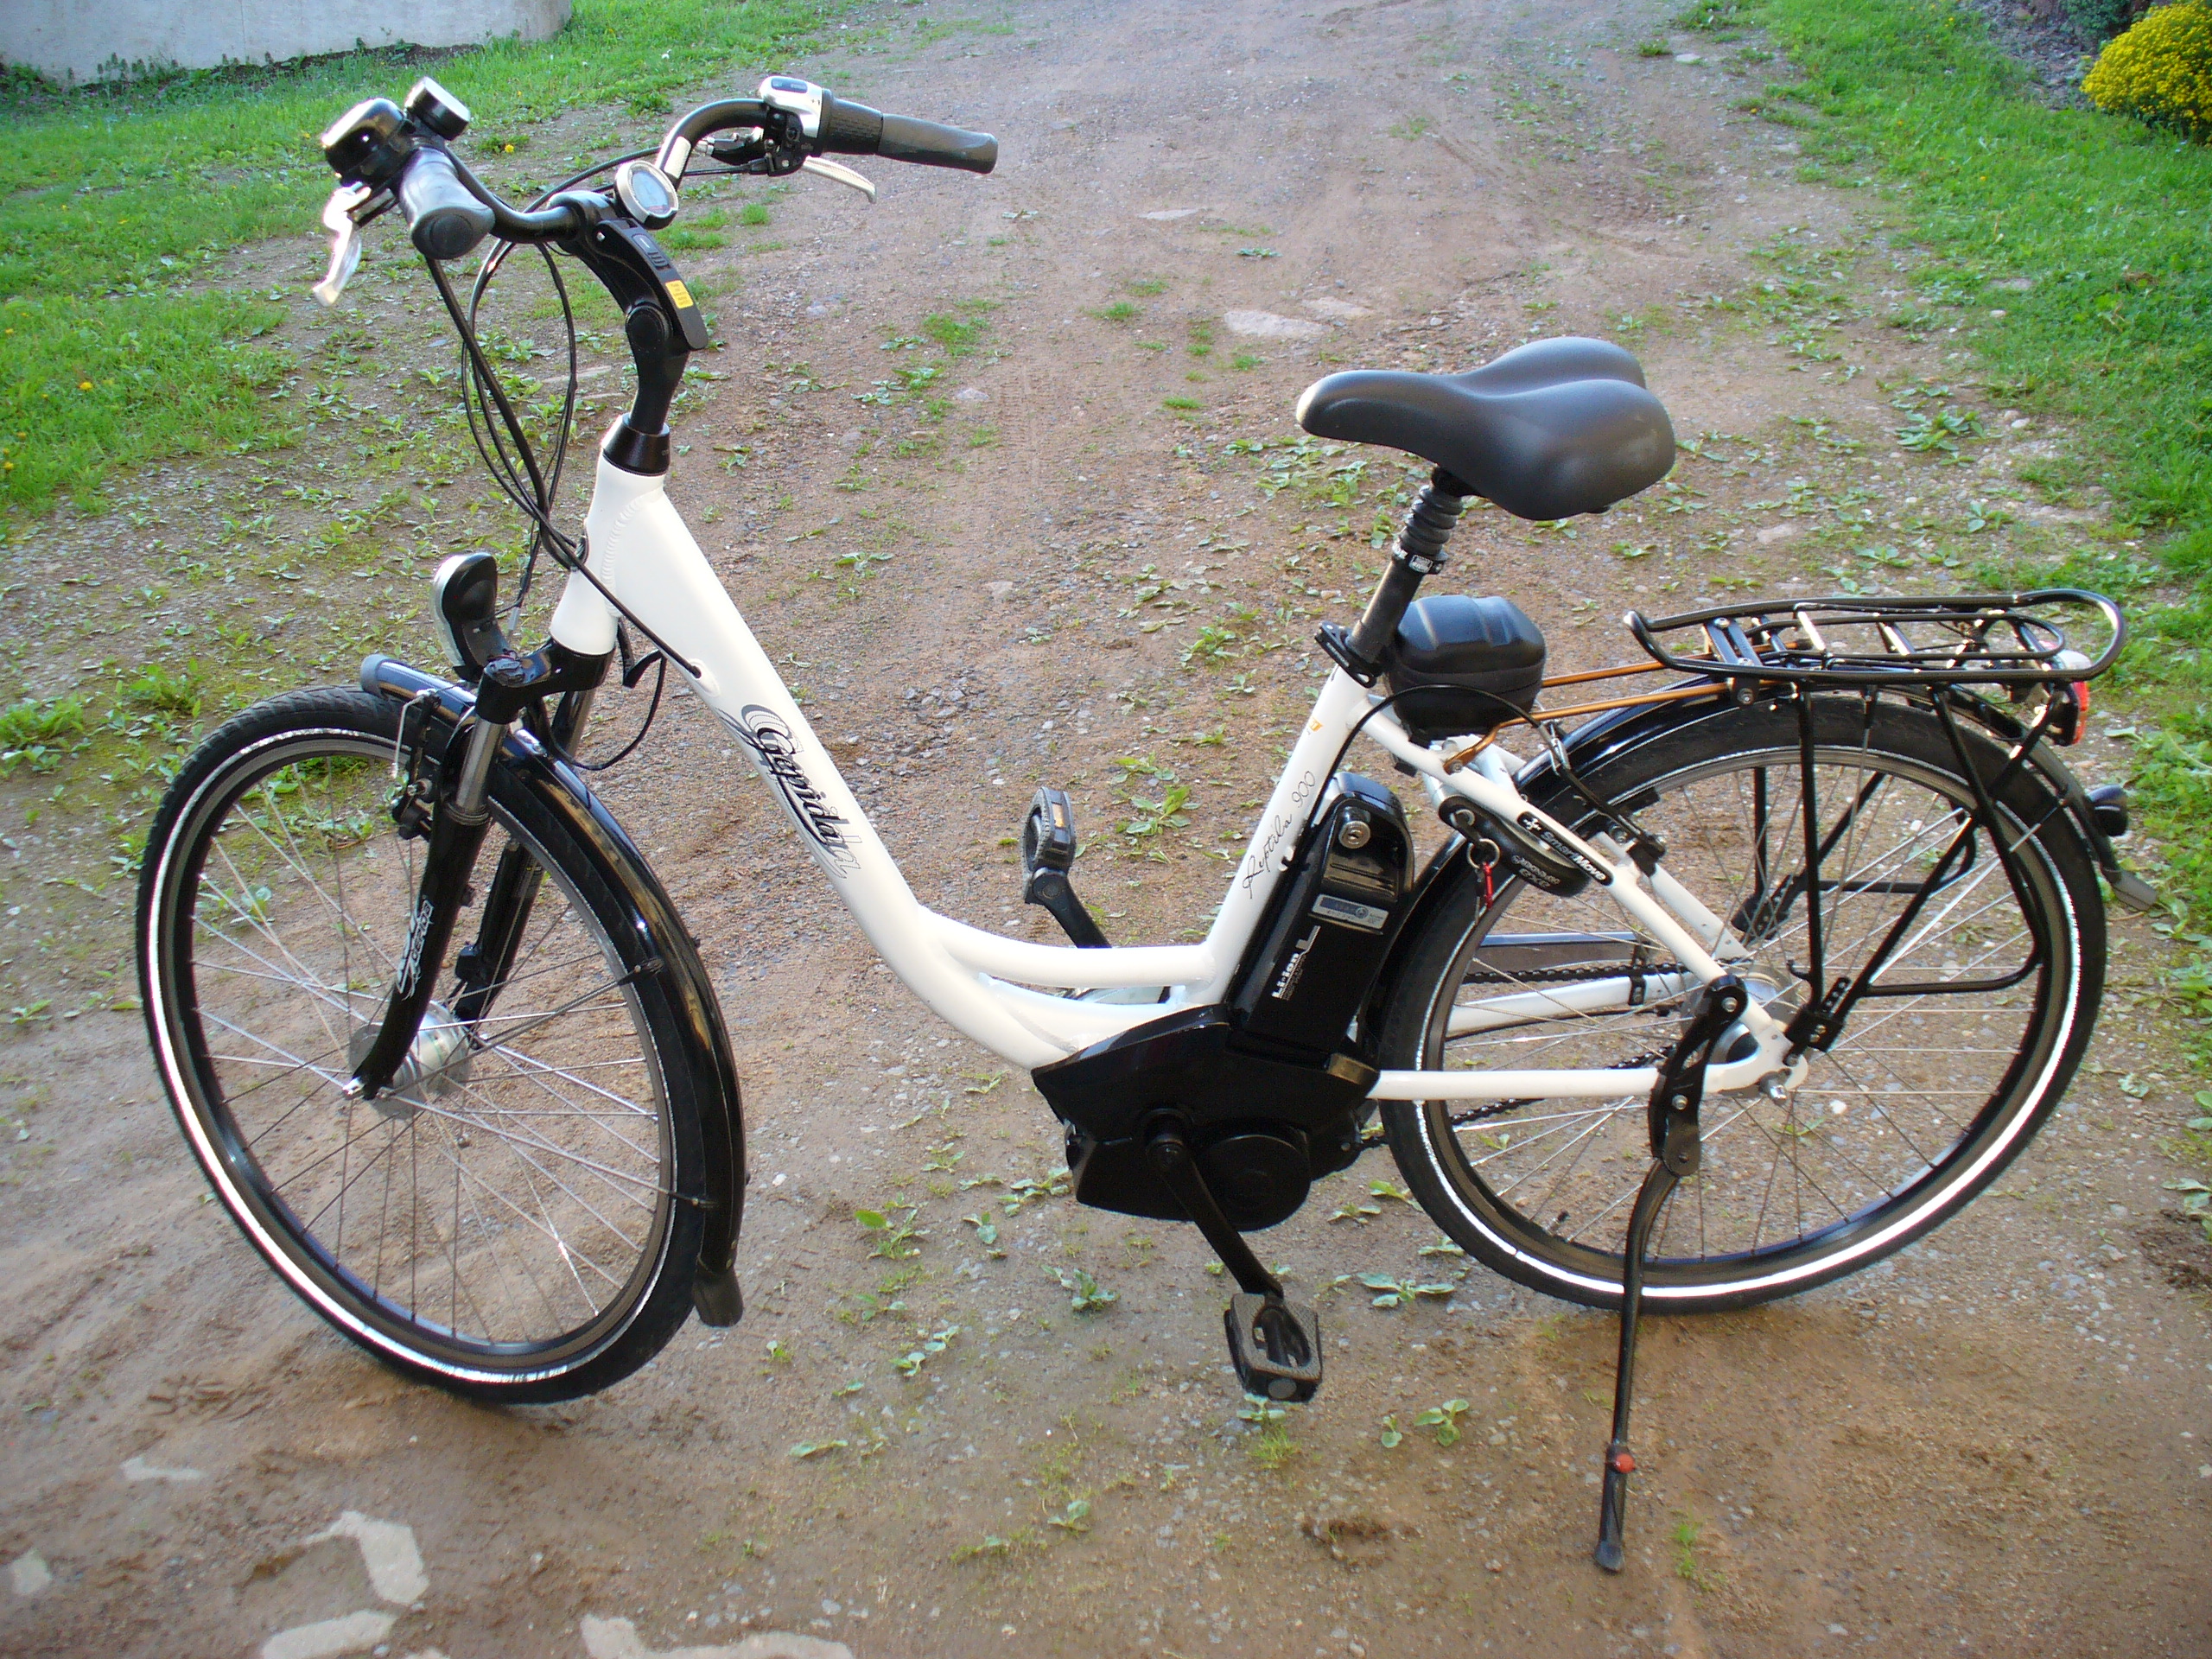 Electric bicycle - Wikipedia